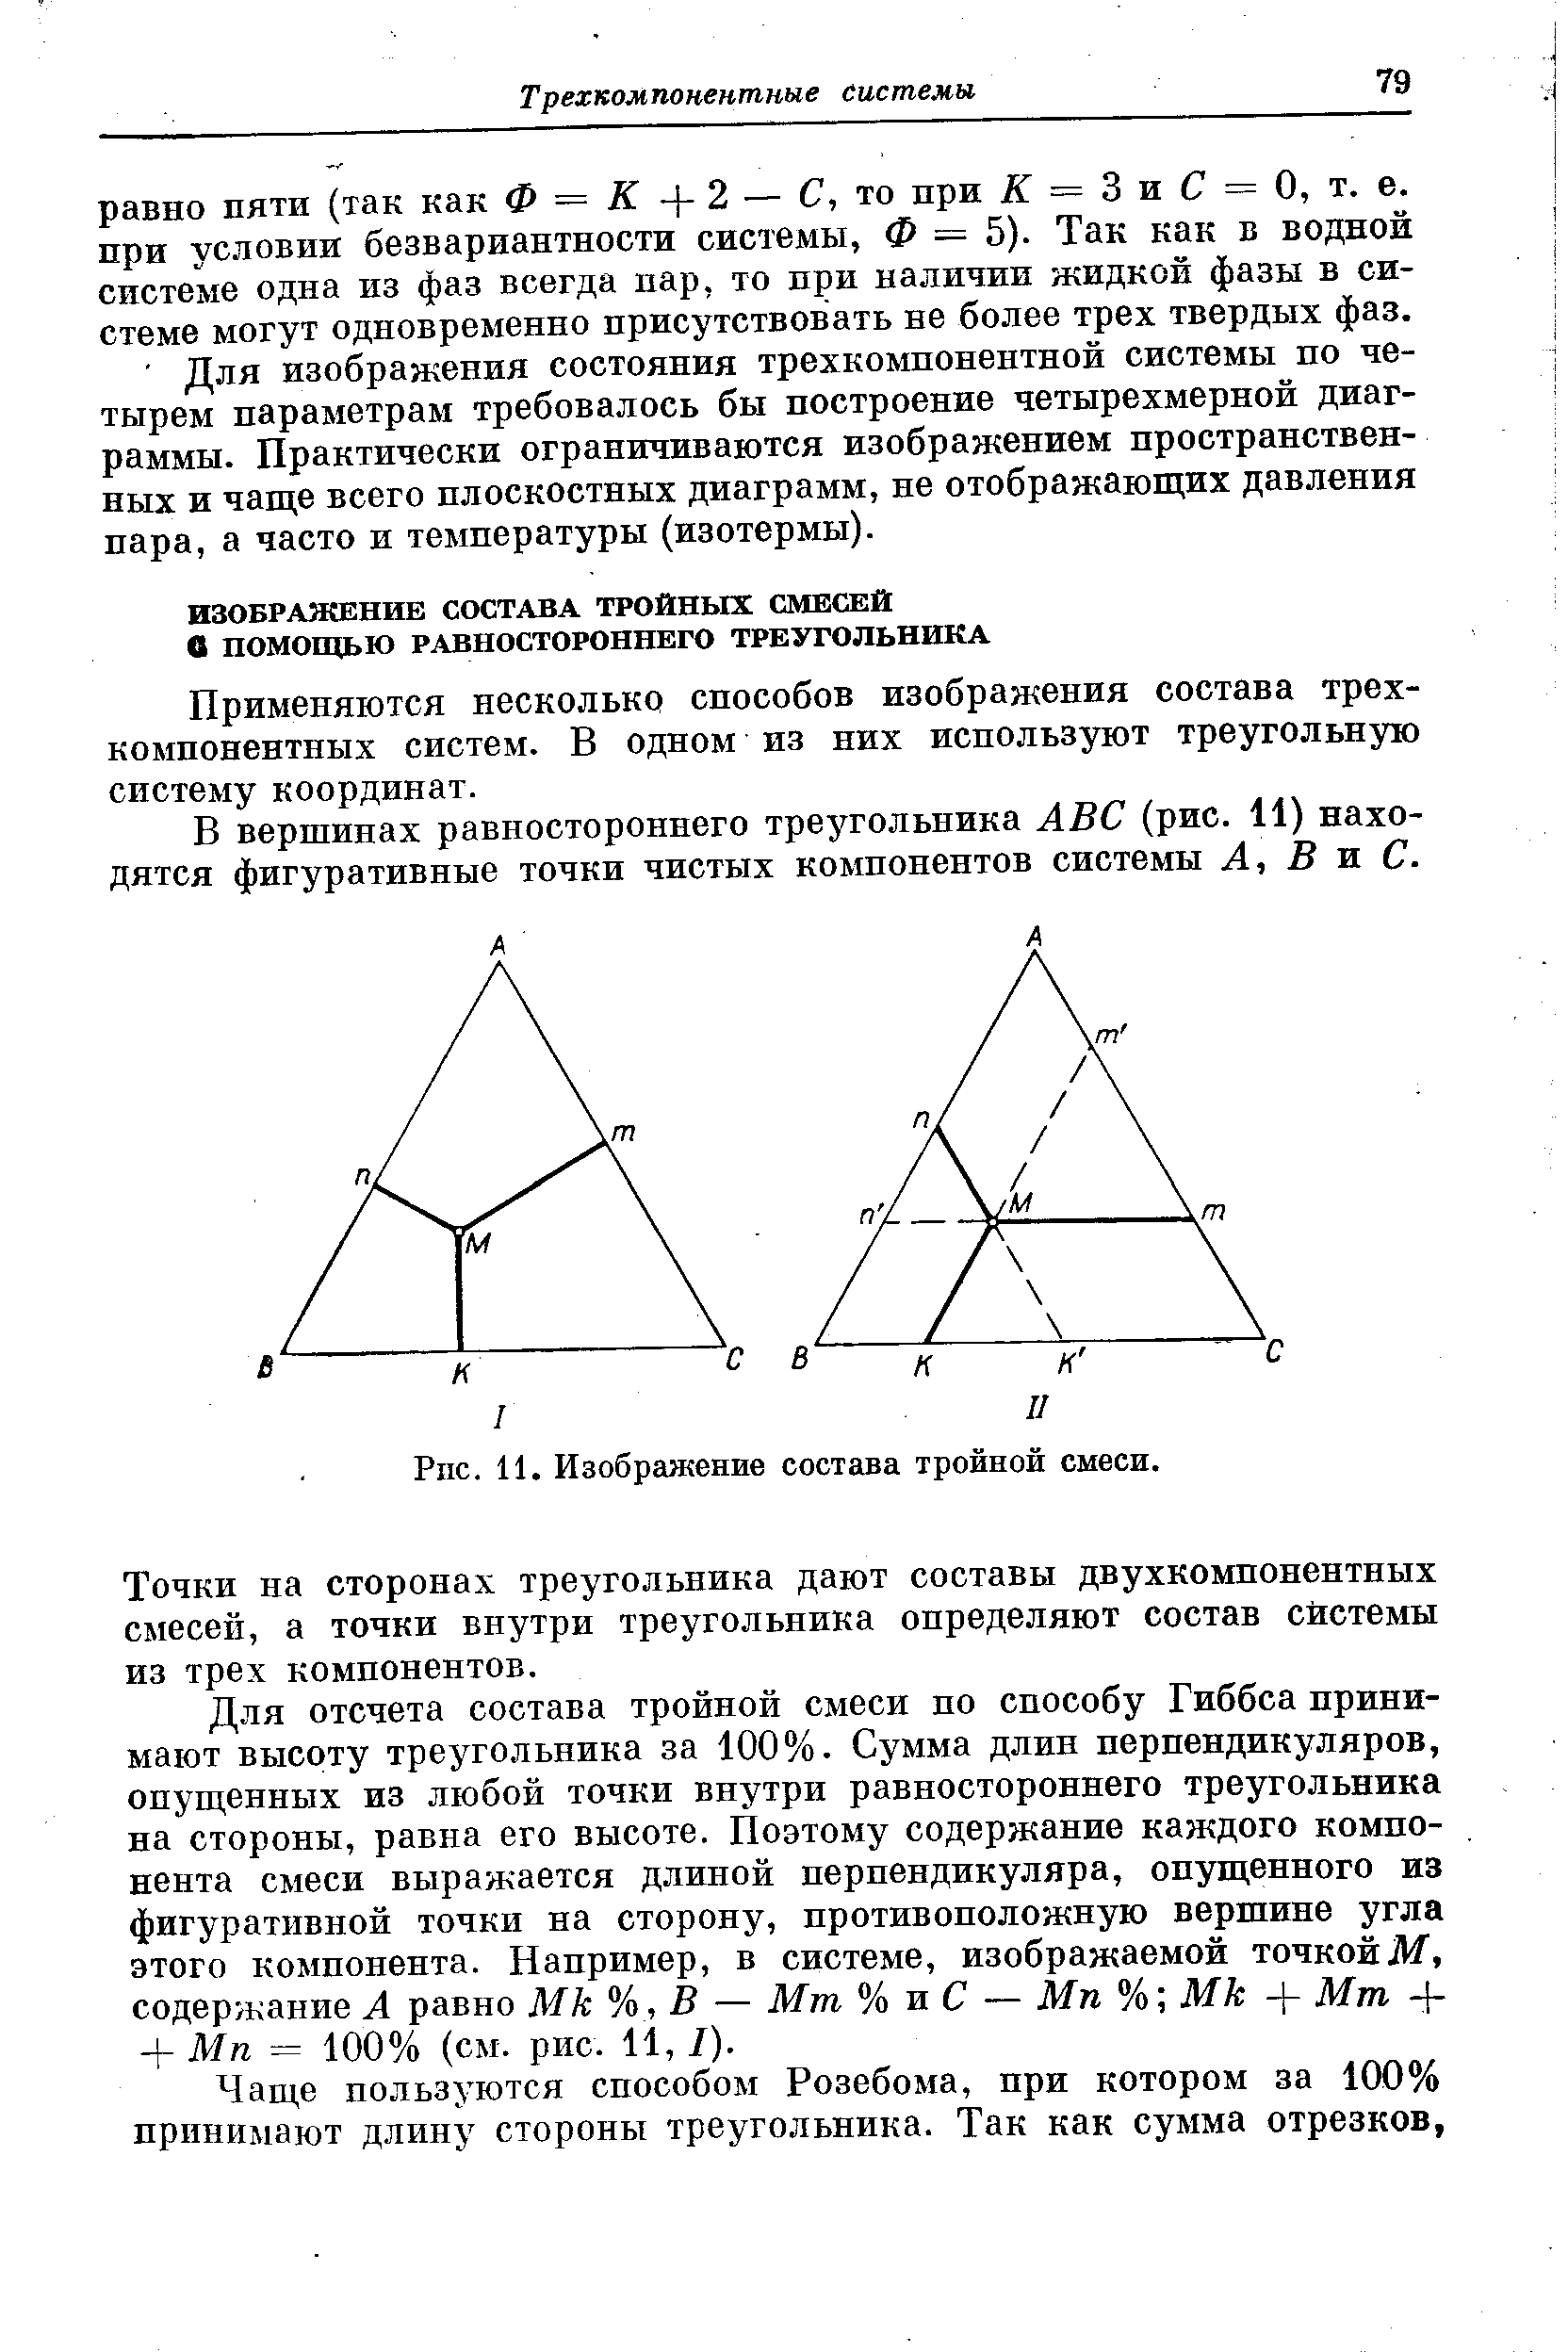 Применяются несколько способов изображения состава трехкомпонентных систем. В одном из них используют треугольную систему координат.